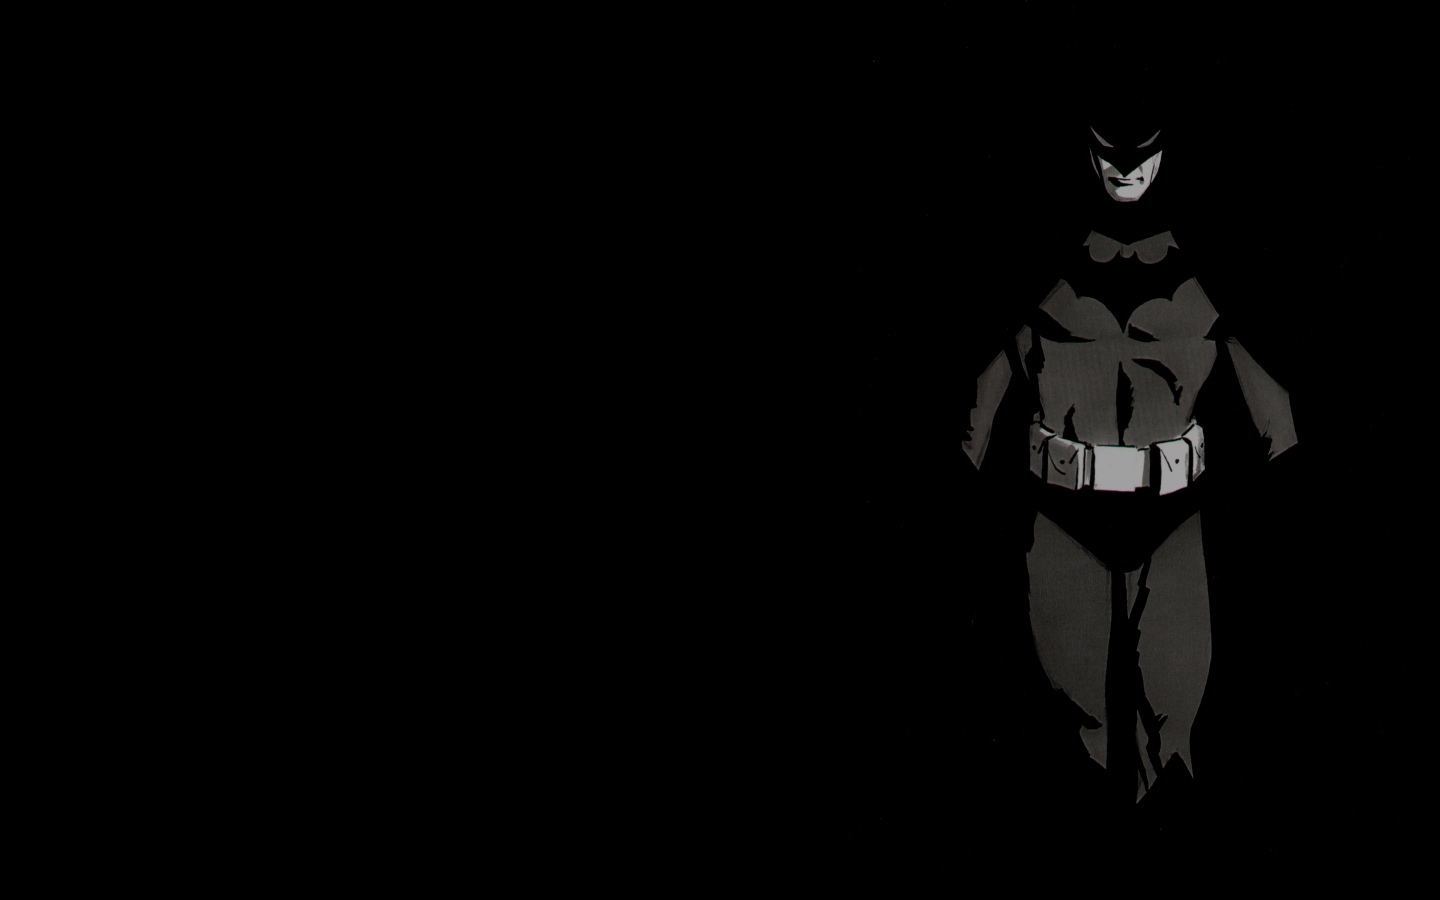 蝙蝠侠黑色高清壁纸高清原图查看